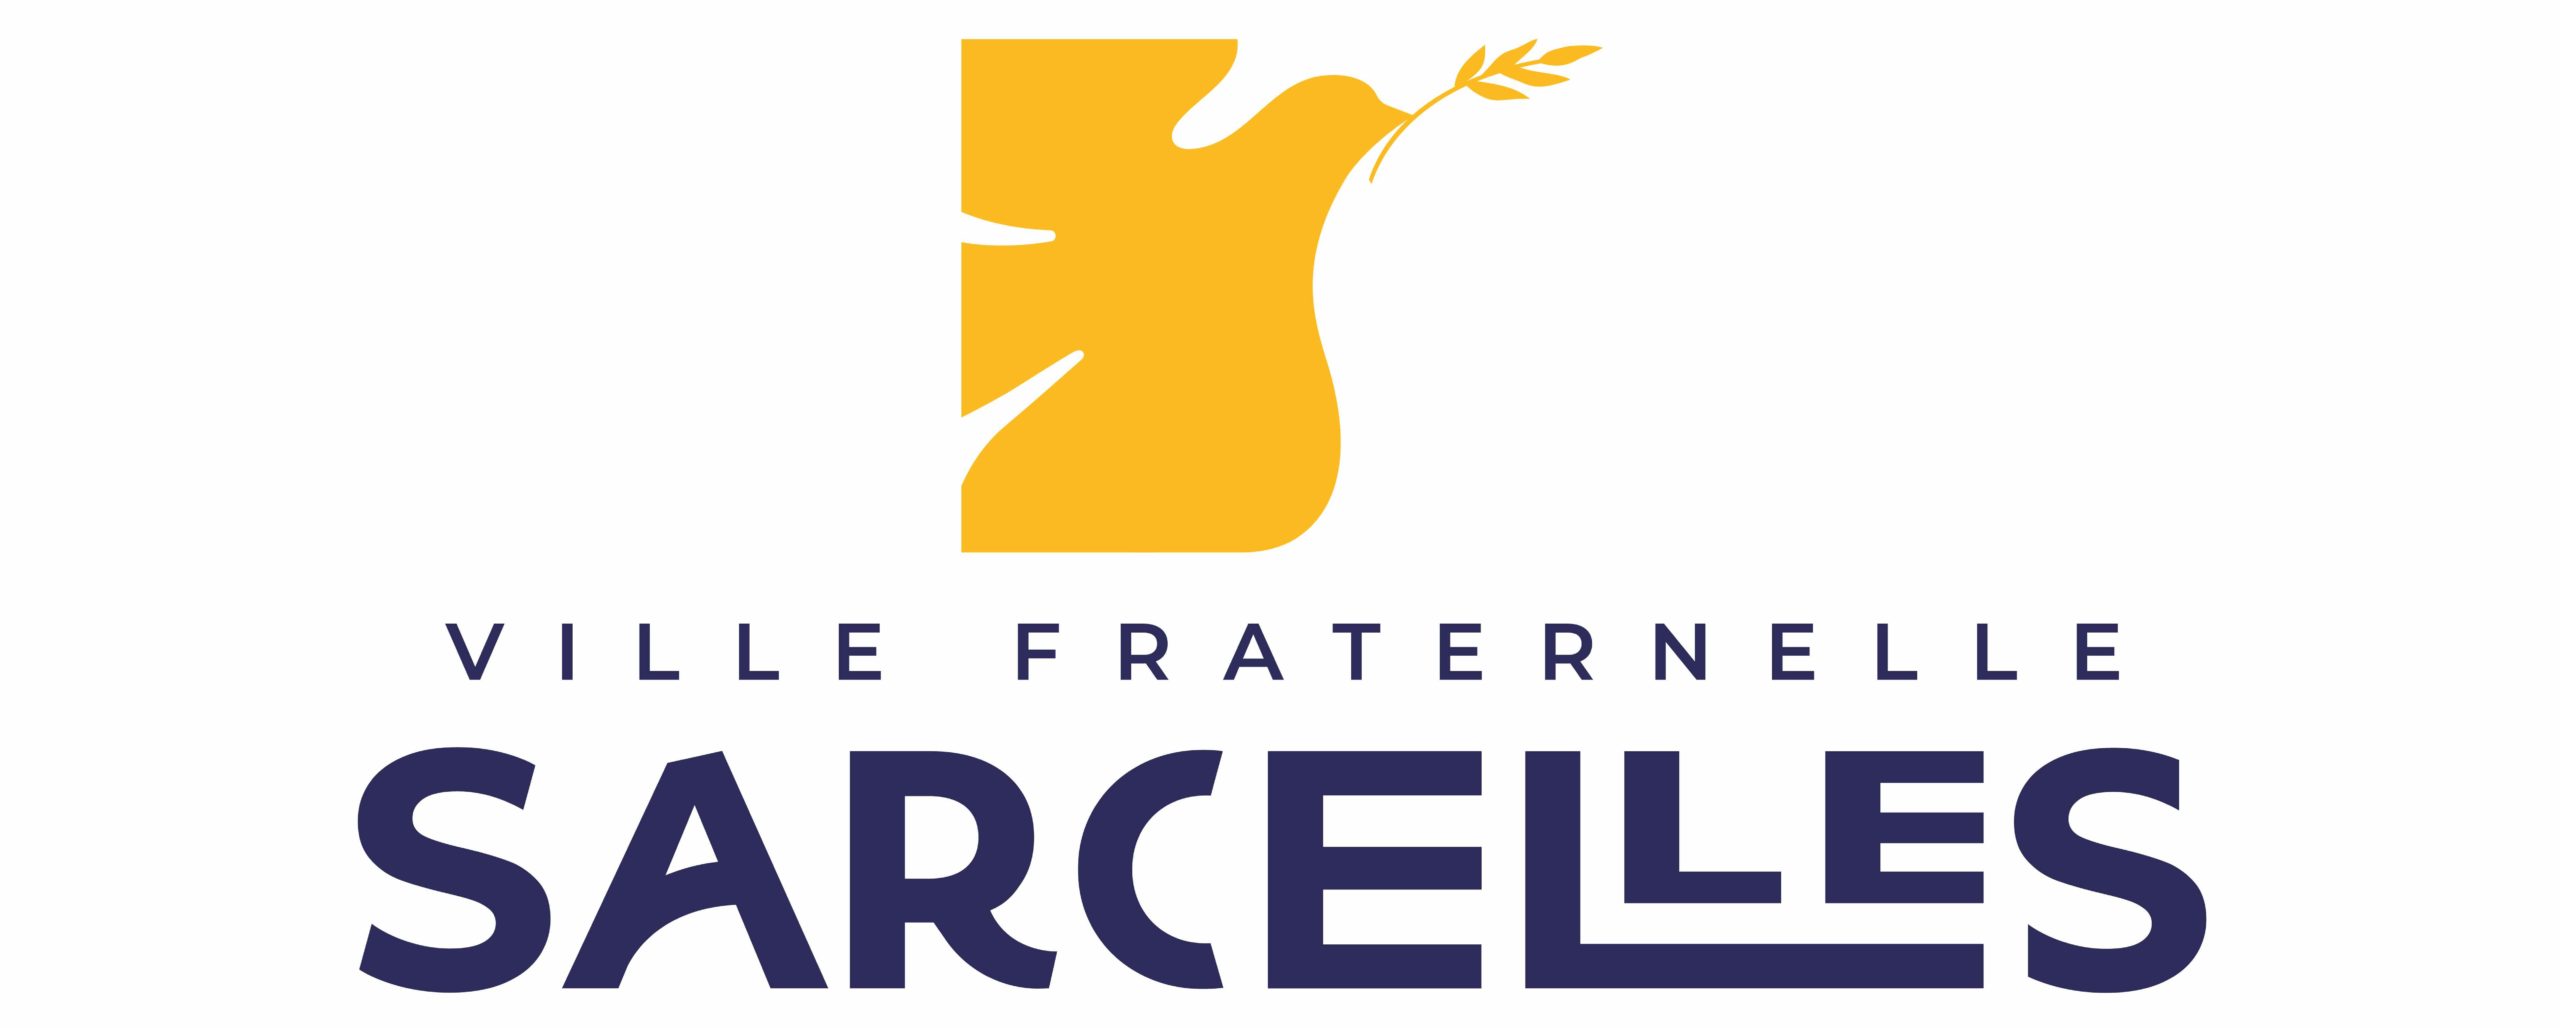 Logo Ville fraternelle sarcelles